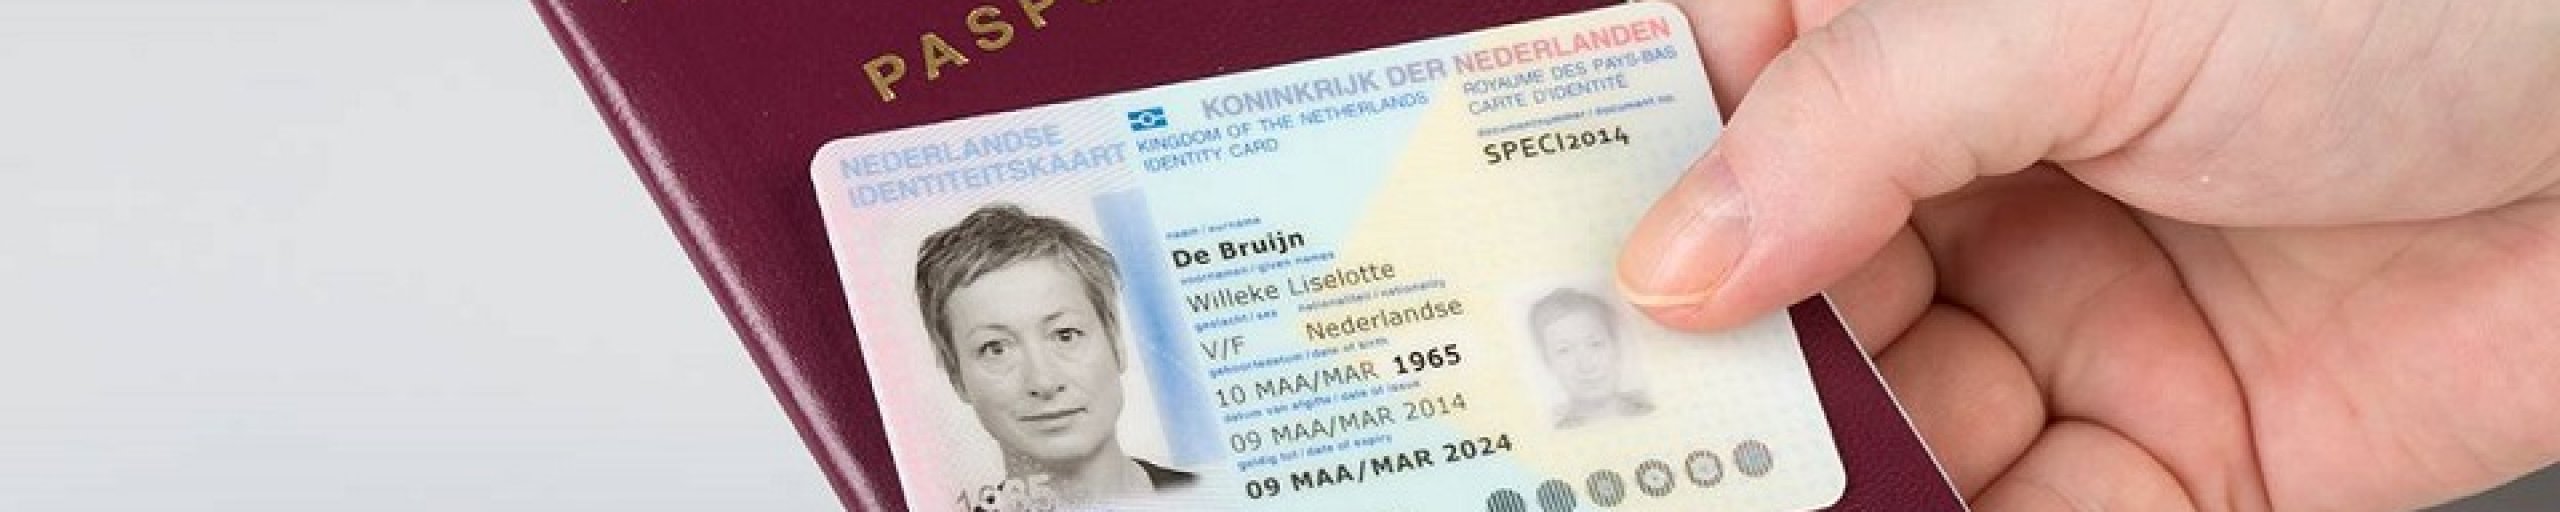 Paspoort en ID